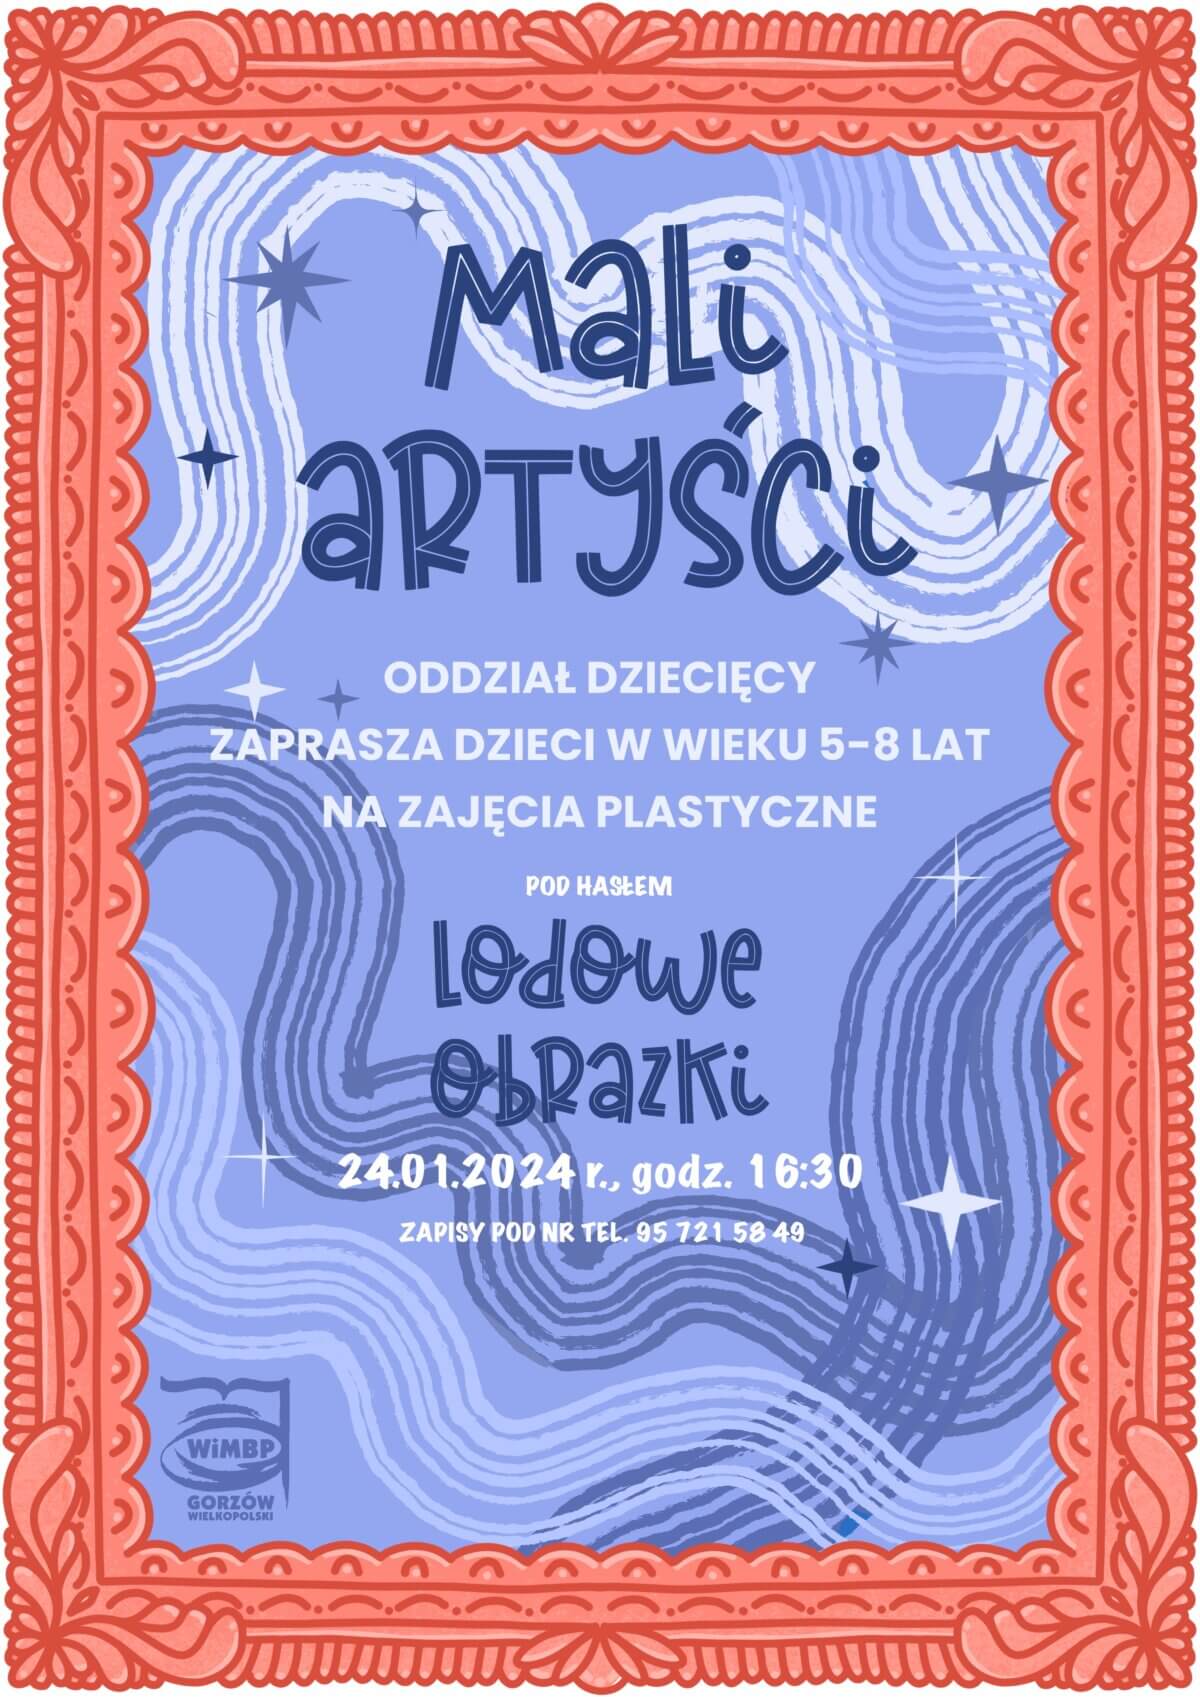 Plakat dotyczący projektu "Mali artyści".